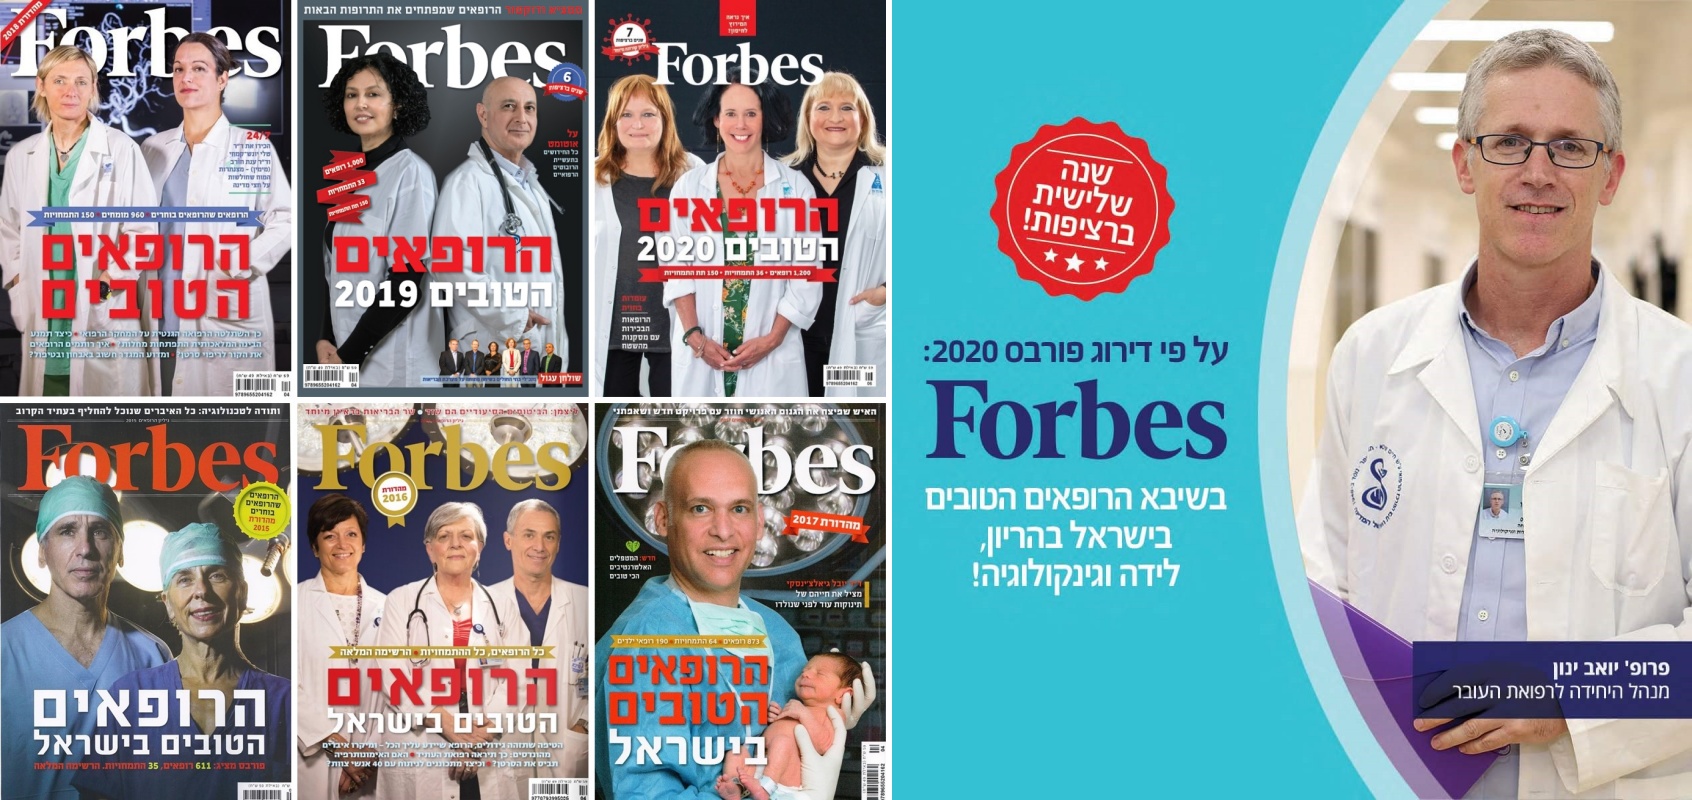 פרופ' יואב ינון נבחר לרשימת הרופאים הטובים בישראל של מגזין פורבס (Forbes), במשך 6 שנים ברציפות 2015-2020